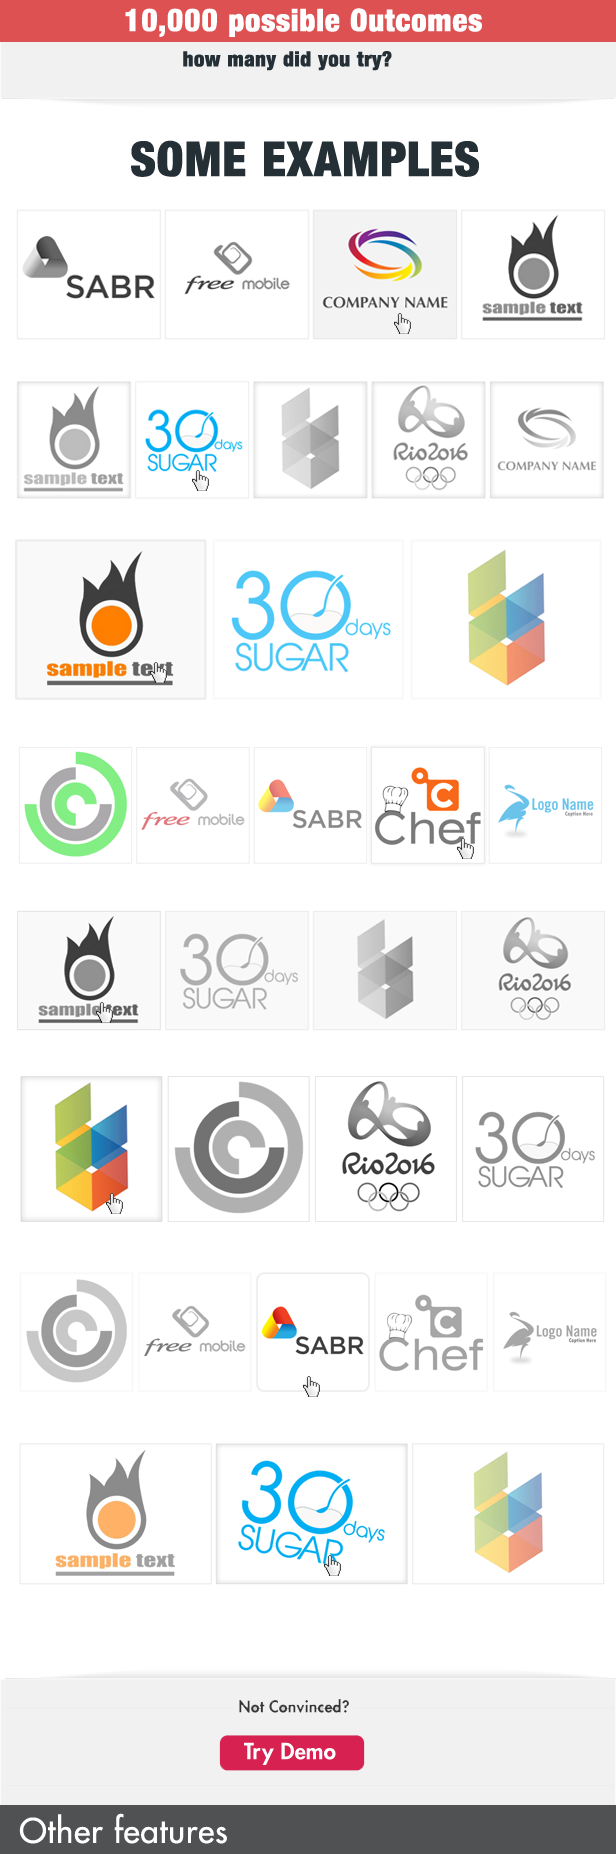 My Logos Showcase WordPress Plugin - 4